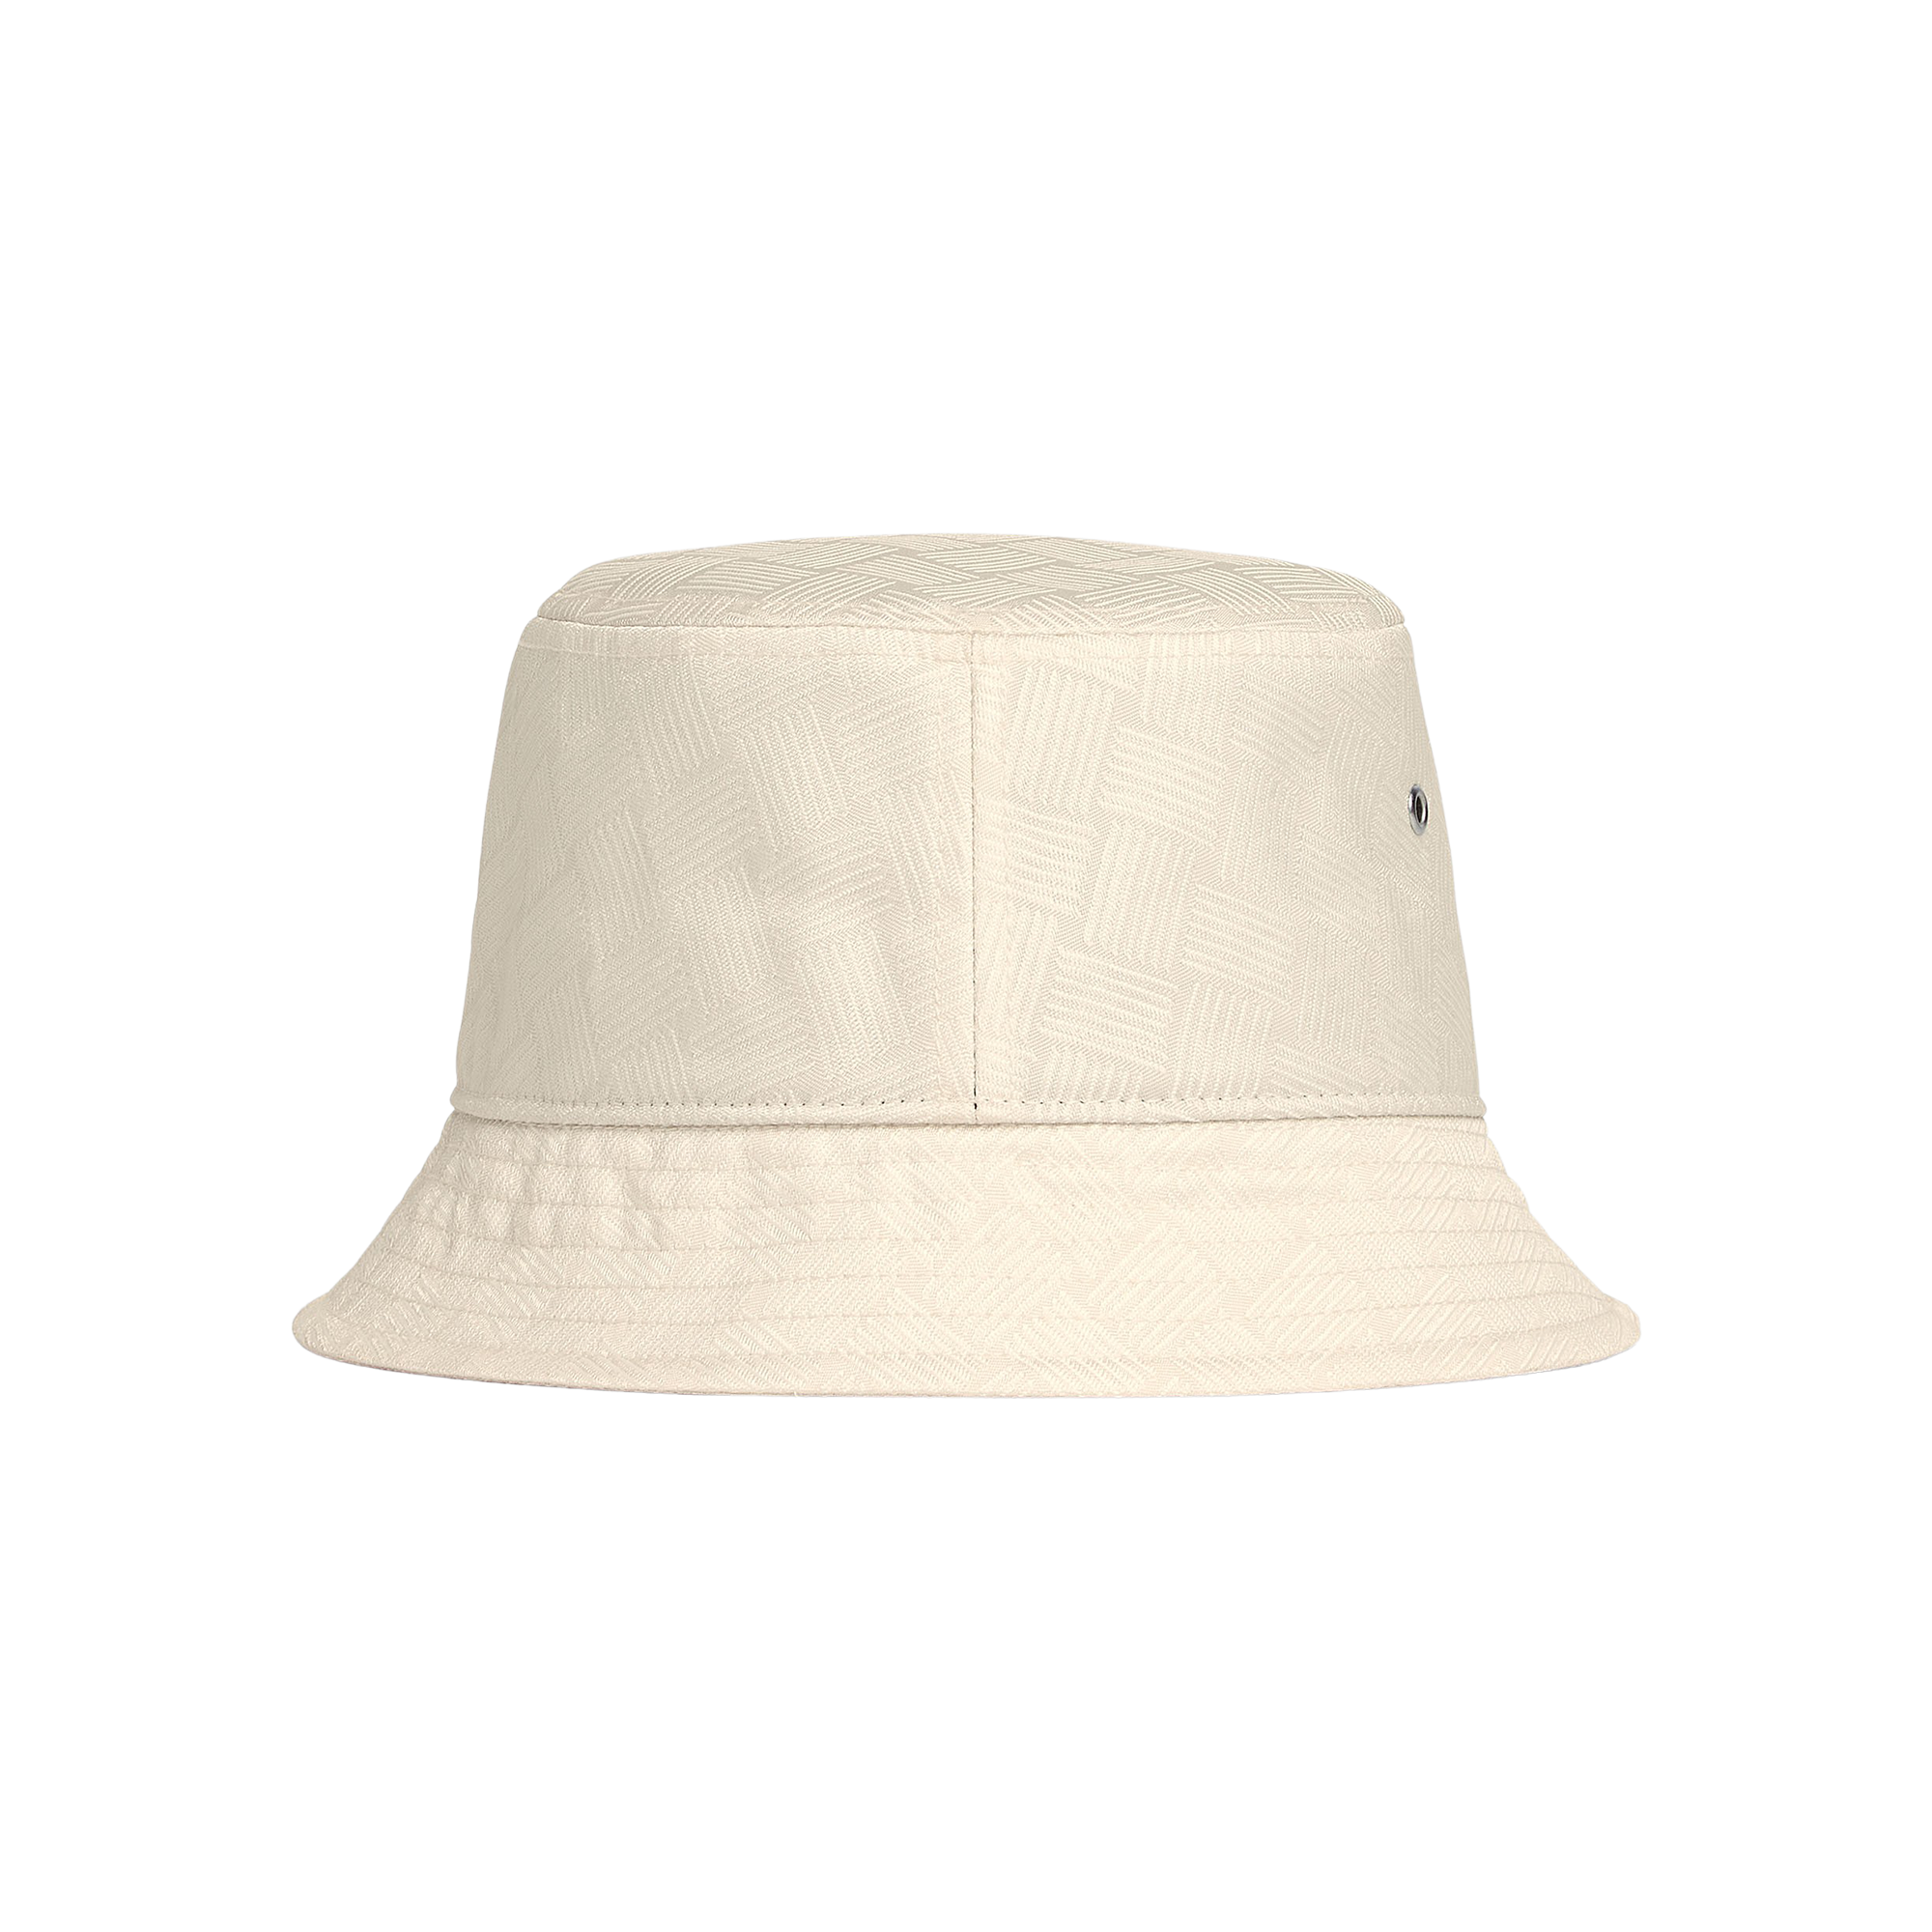 Bottega Veneta Hat